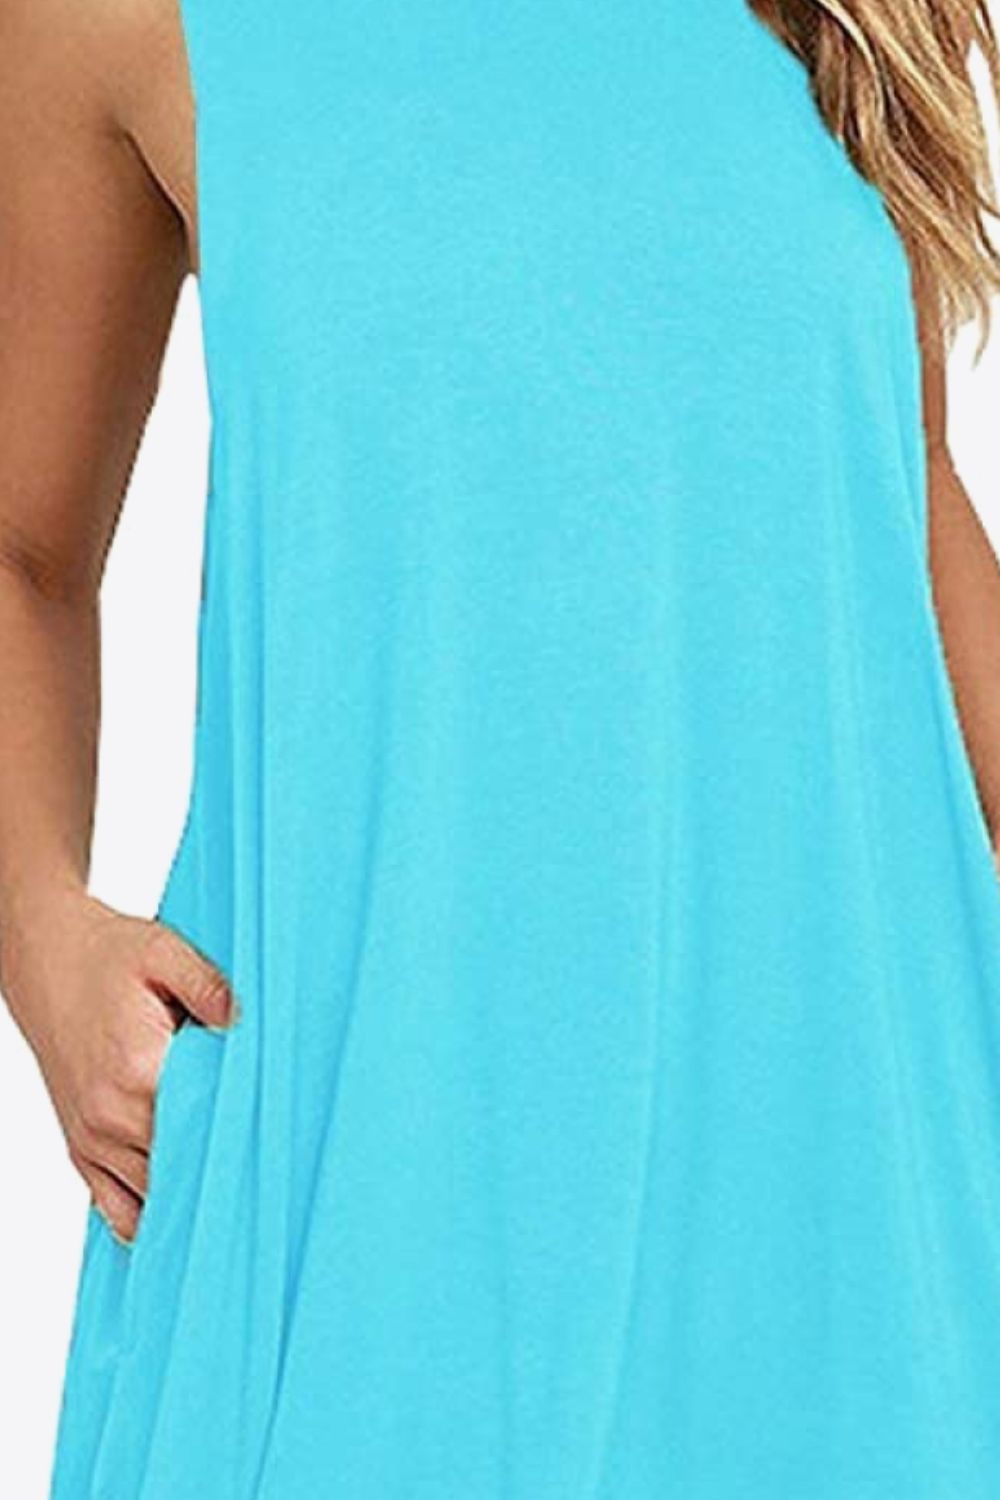 Medium Turquoise Full Size Round Neck Sleeveless Dress with Pockets